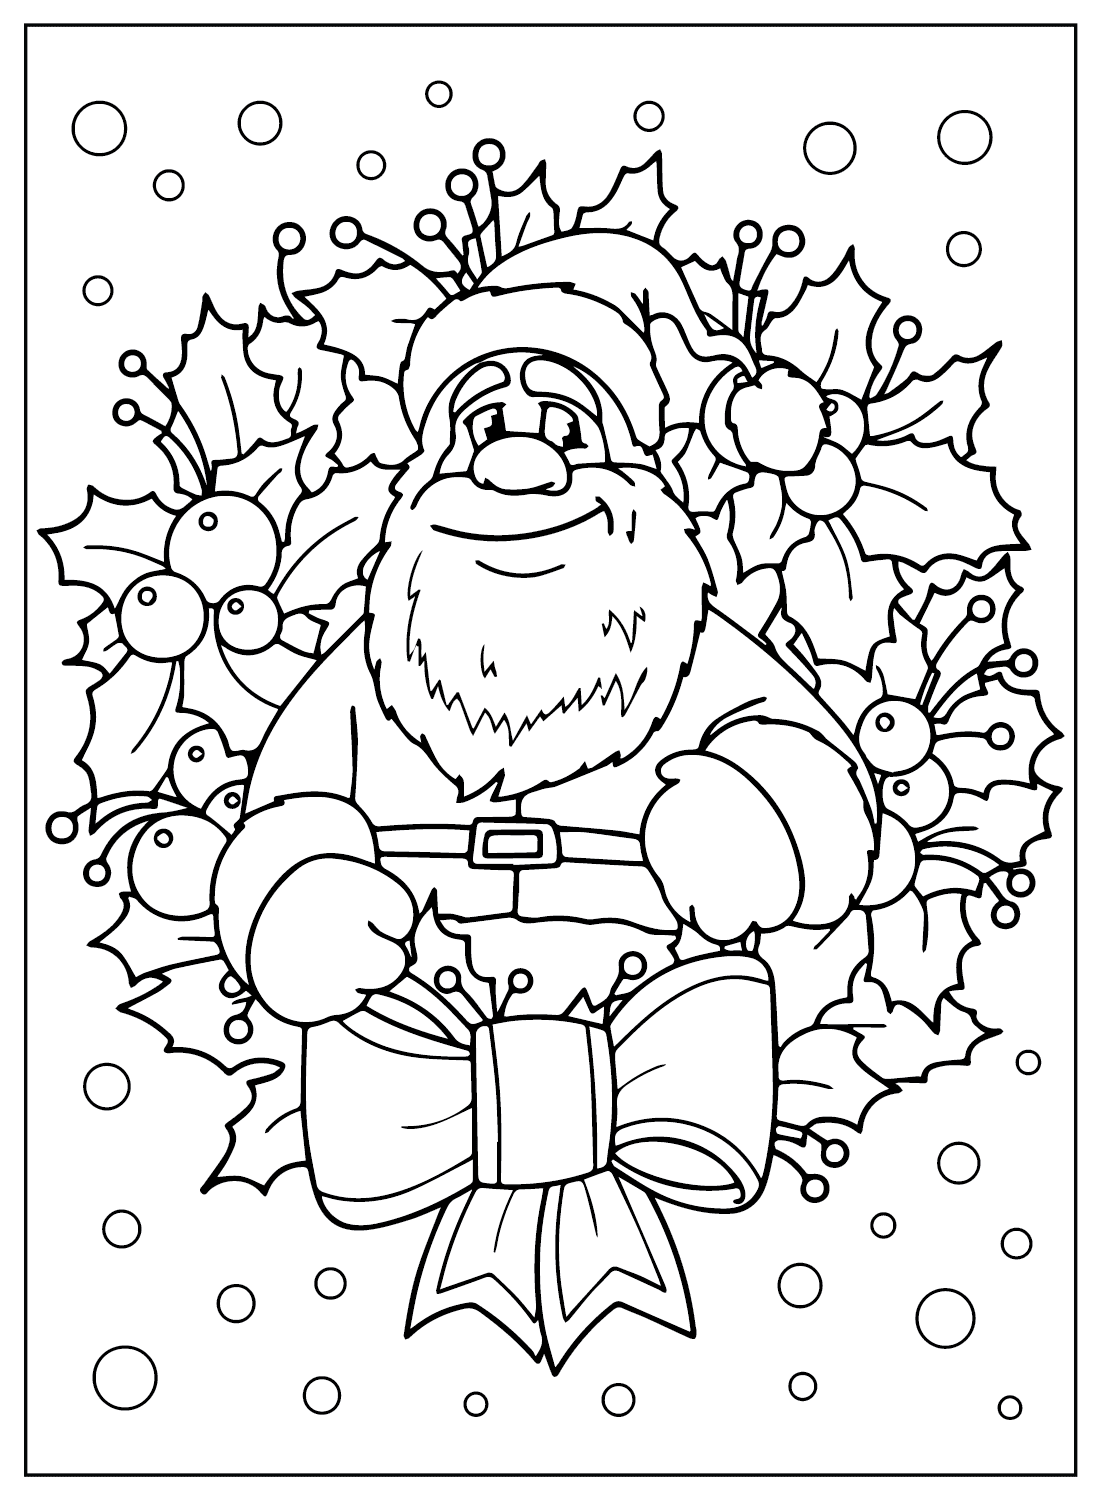 Página para colorear de Papá Noel para imprimir gratis de Papá Noel